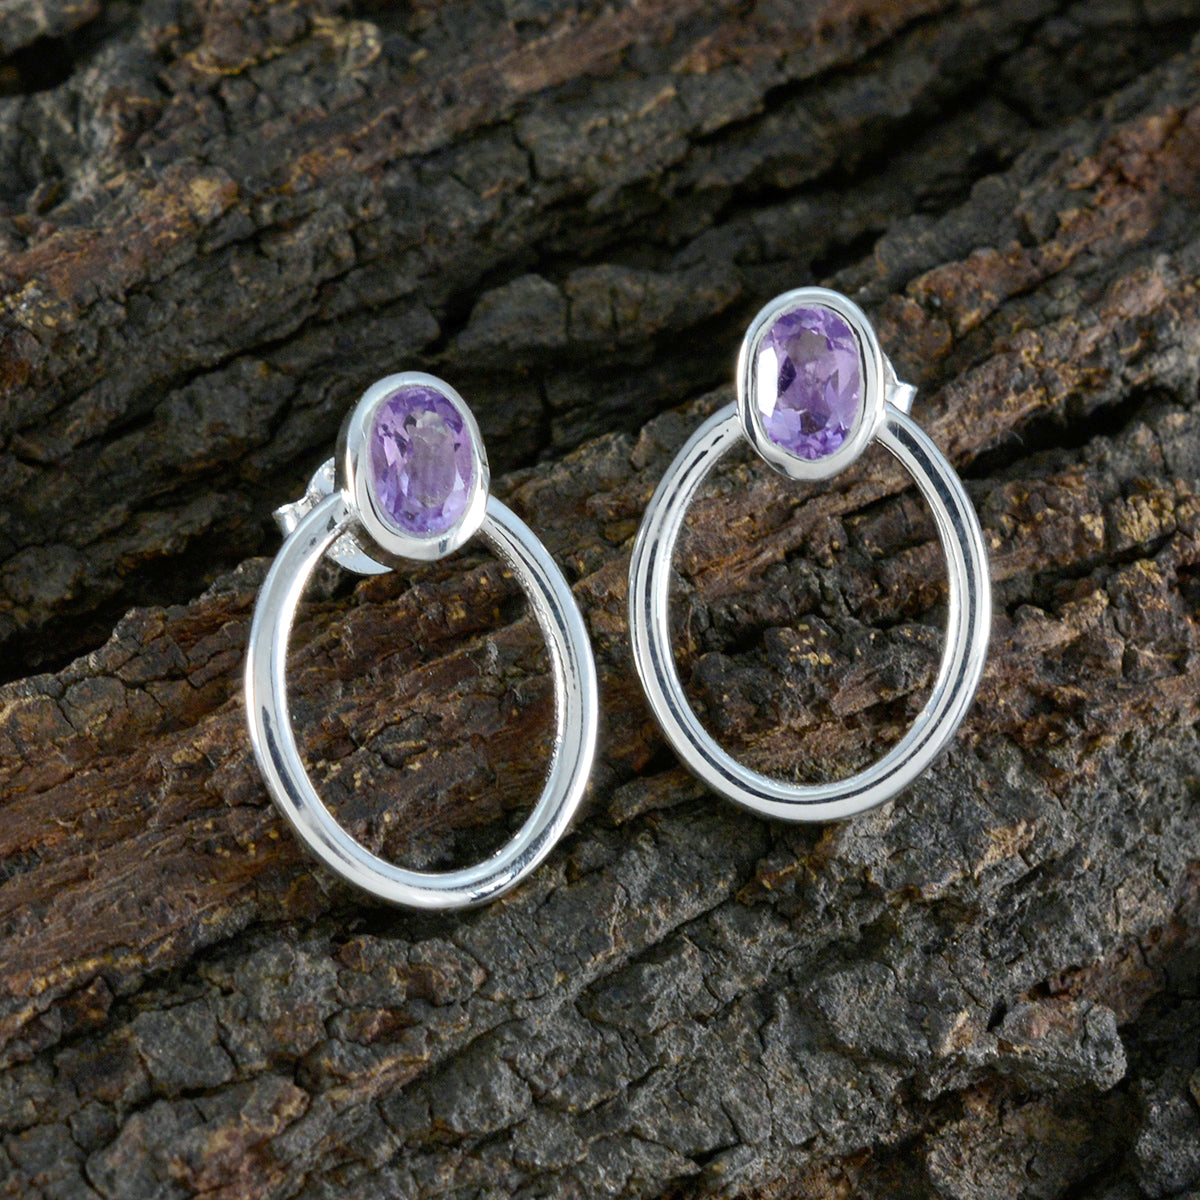 Riyo Smashing Sterling Silver Earring For Lady Amethyst Earring Bezel Setting Purple Earring Stud Earring